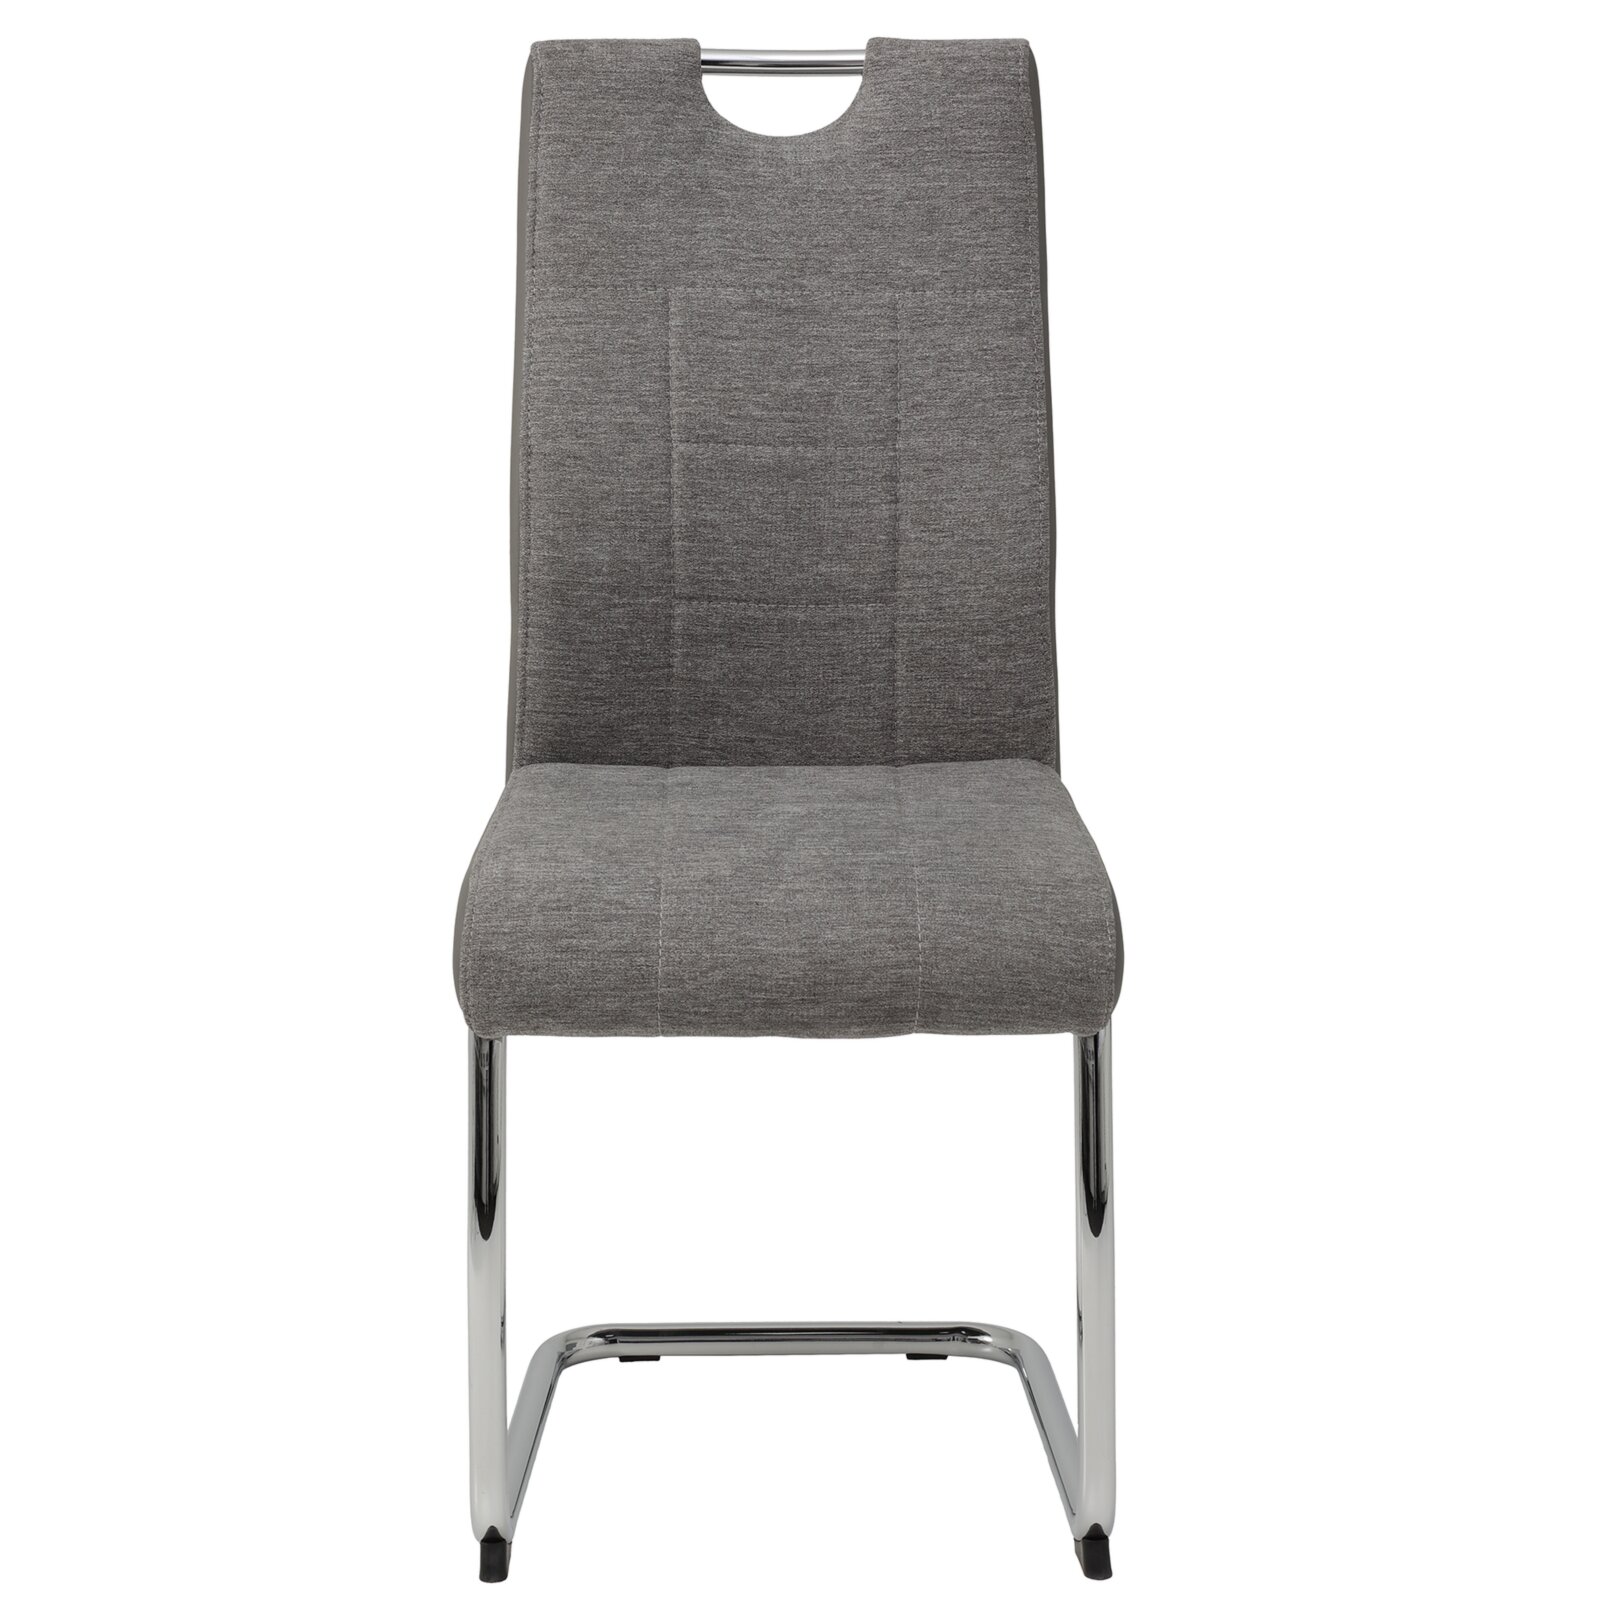 4-teiliges Schwingstuhl-Set - grau - Webstoff | Online bei ROLLER kaufen